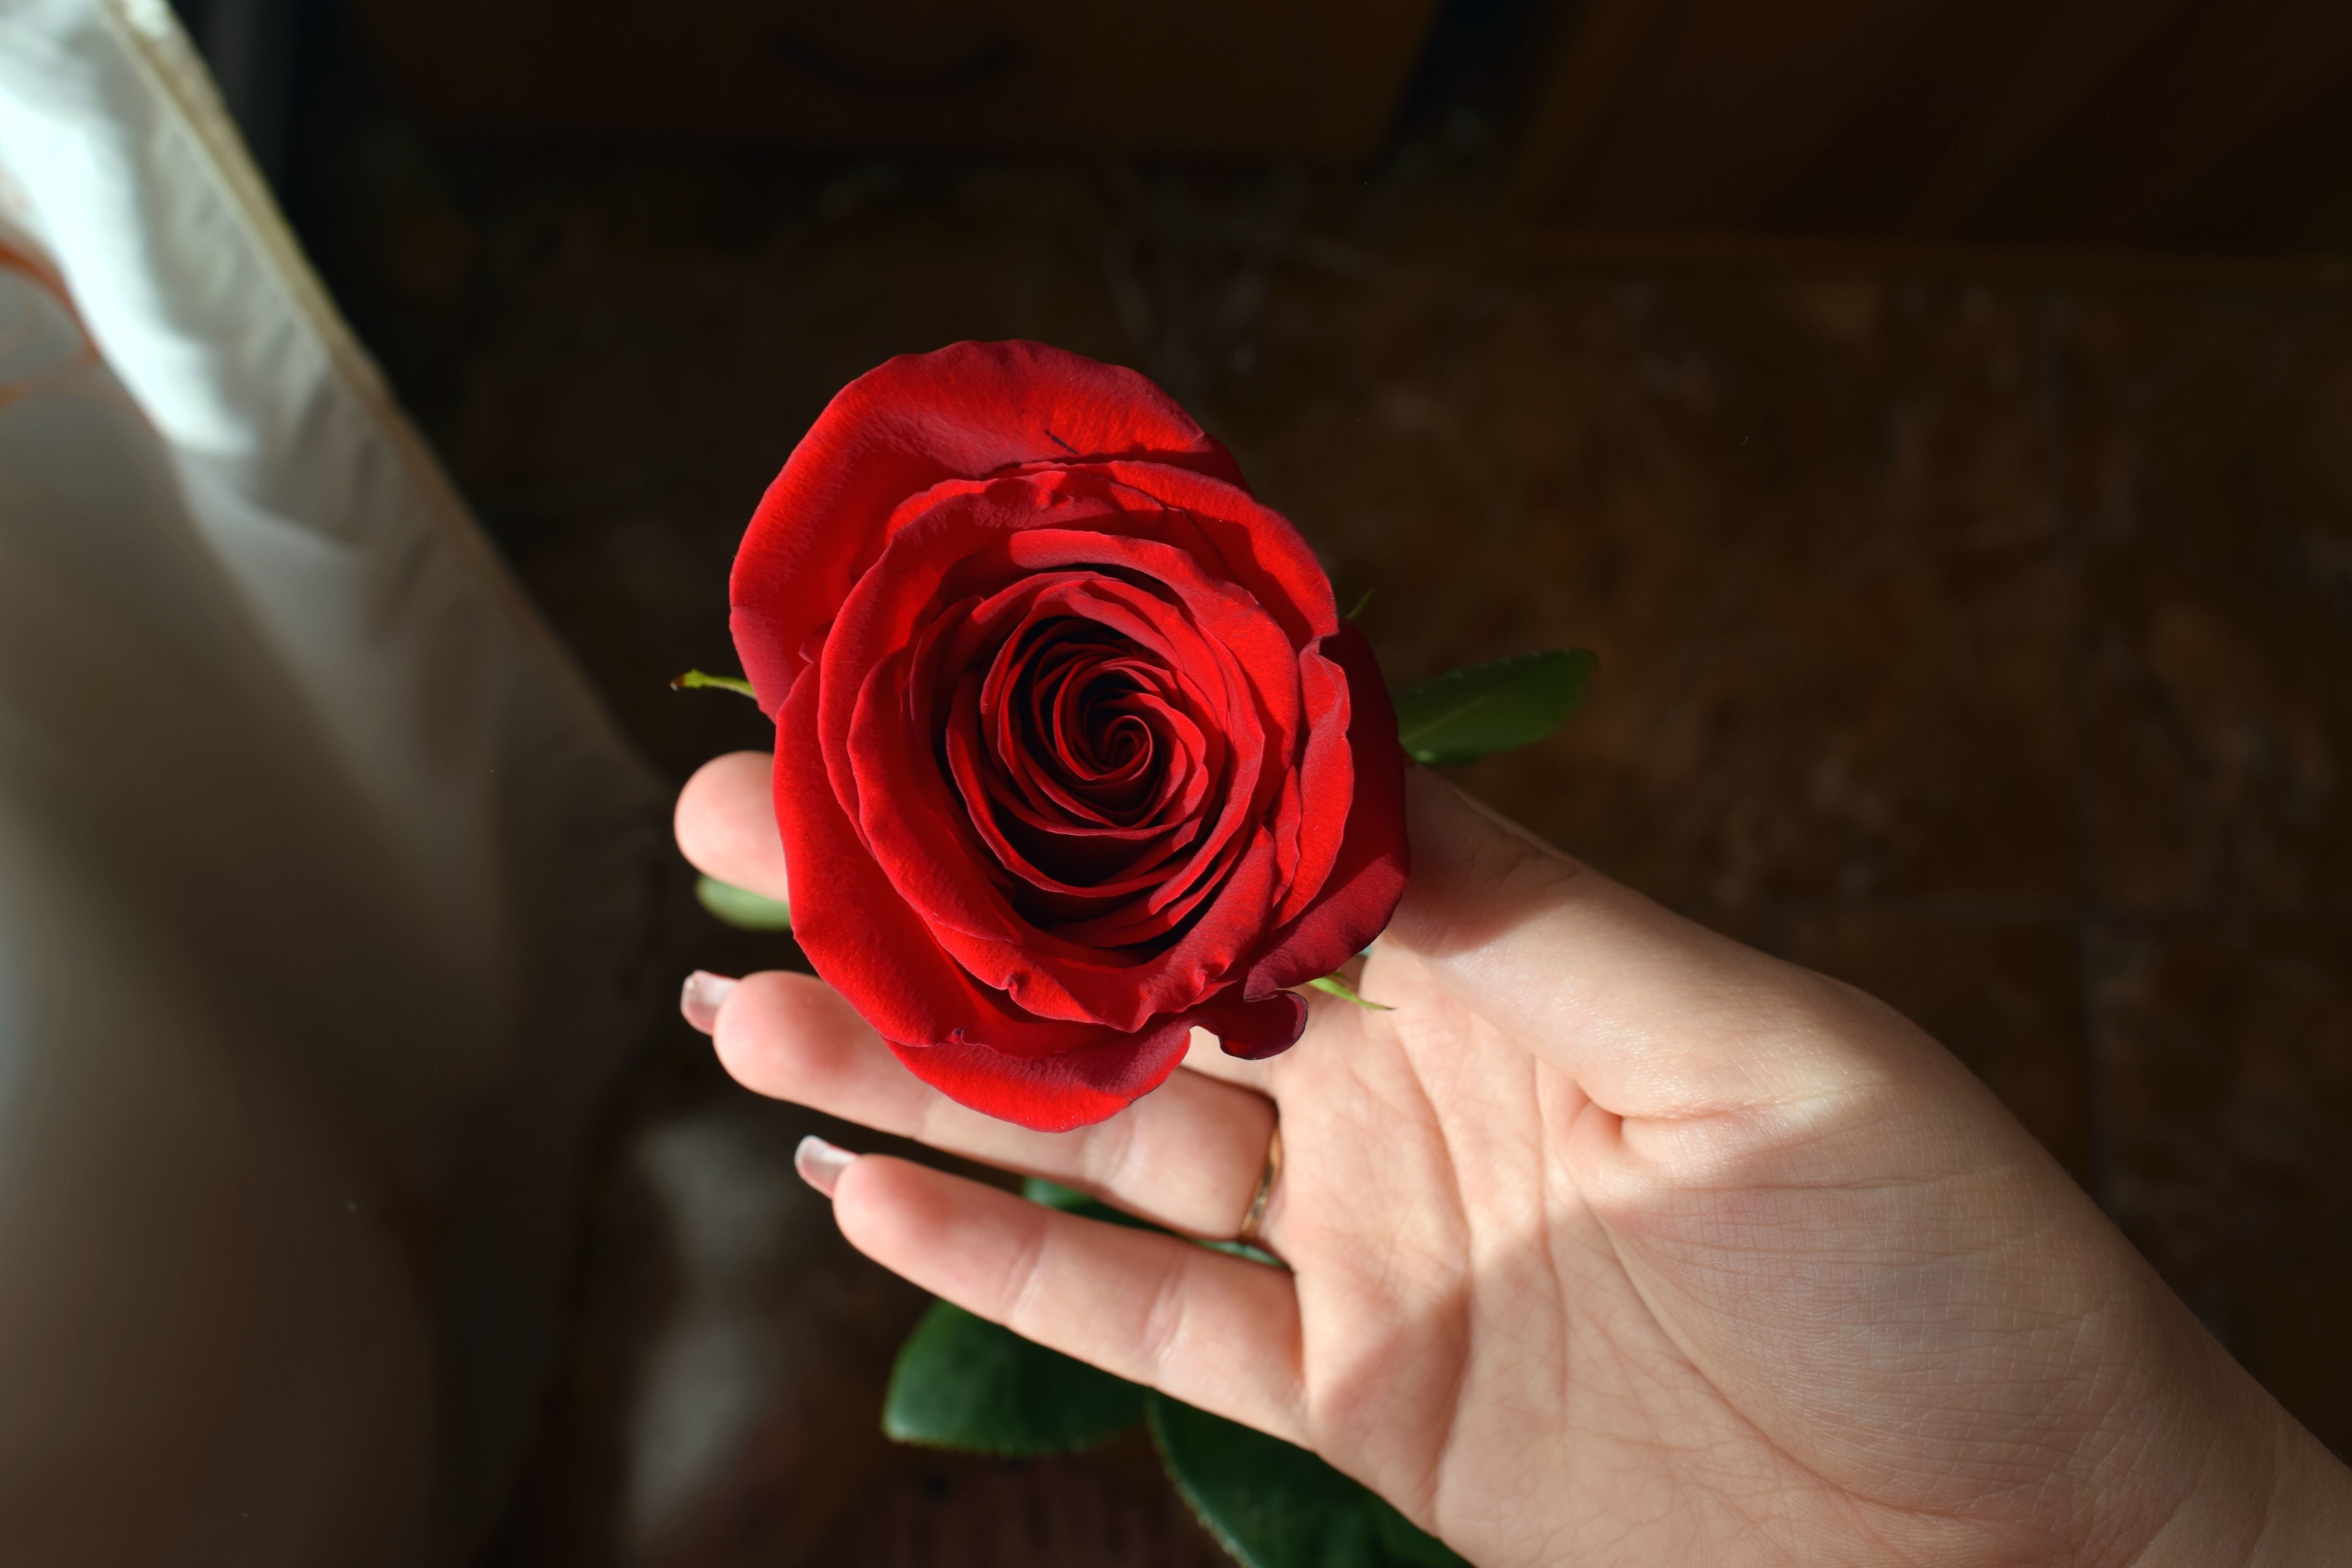 Image libre: rose rouge, main humaine, romantique, fleur, floraison, belle